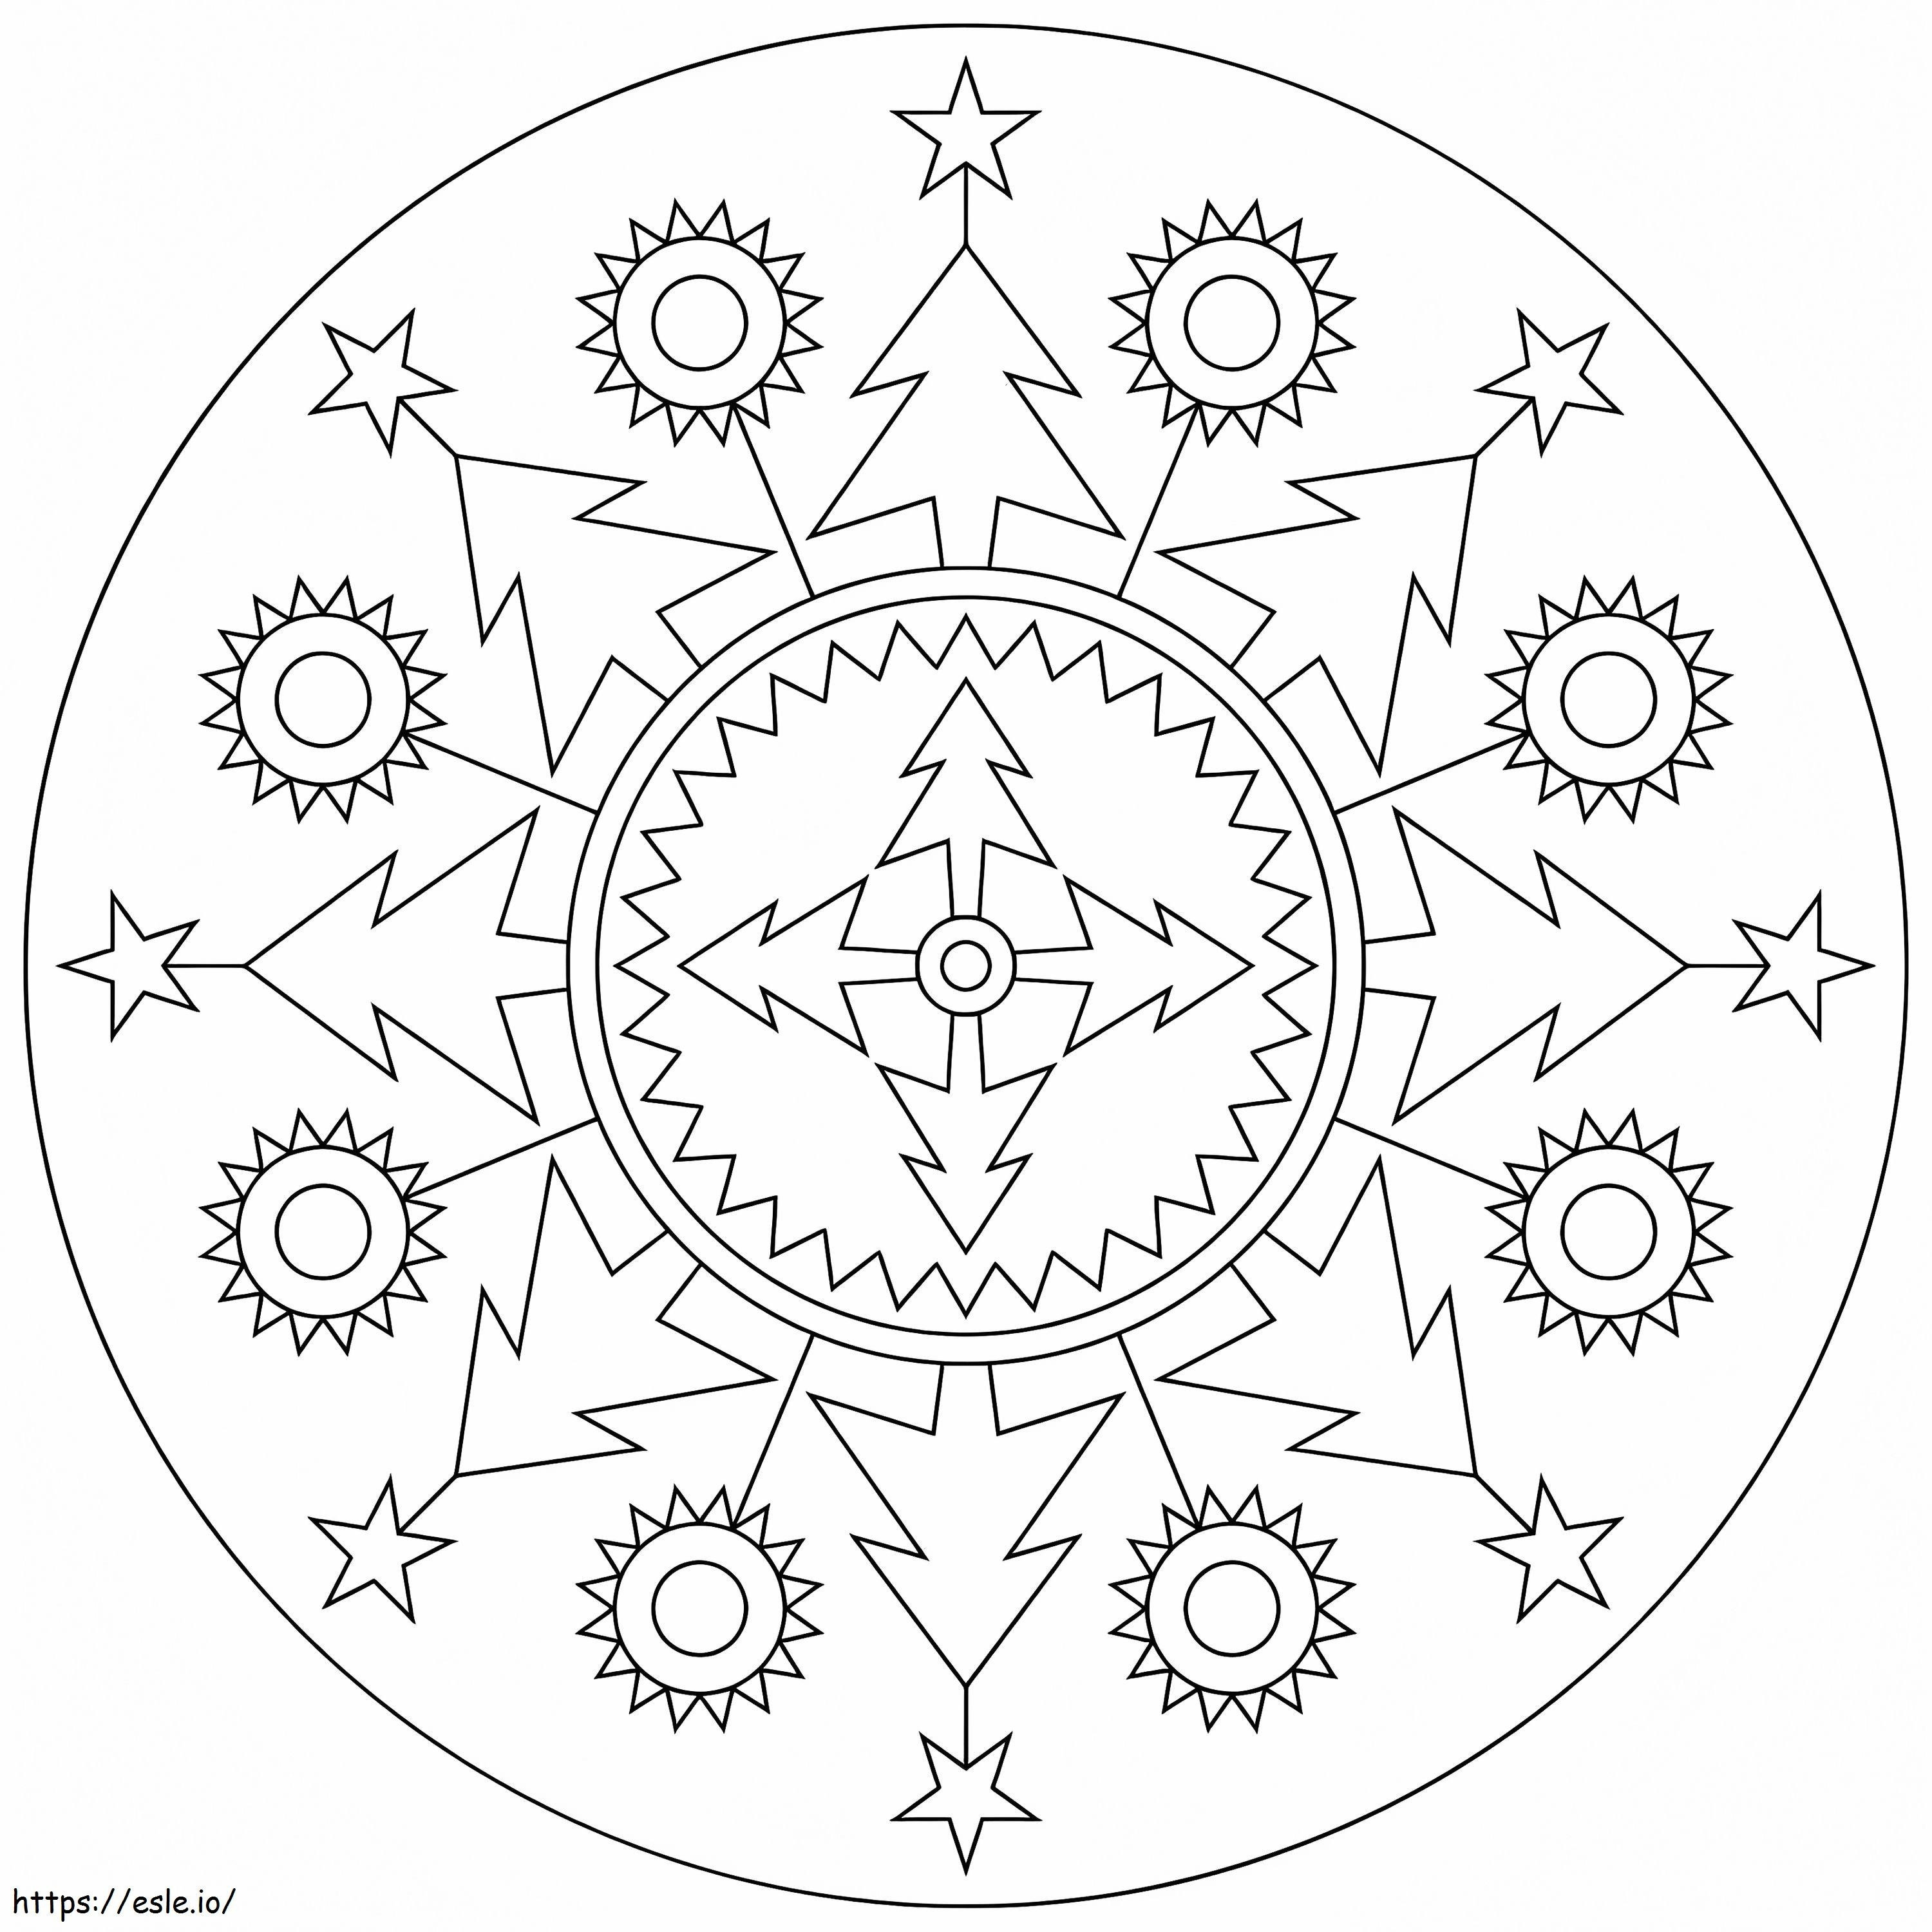 Coloriage Mandala de Noël 6 à imprimer dessin